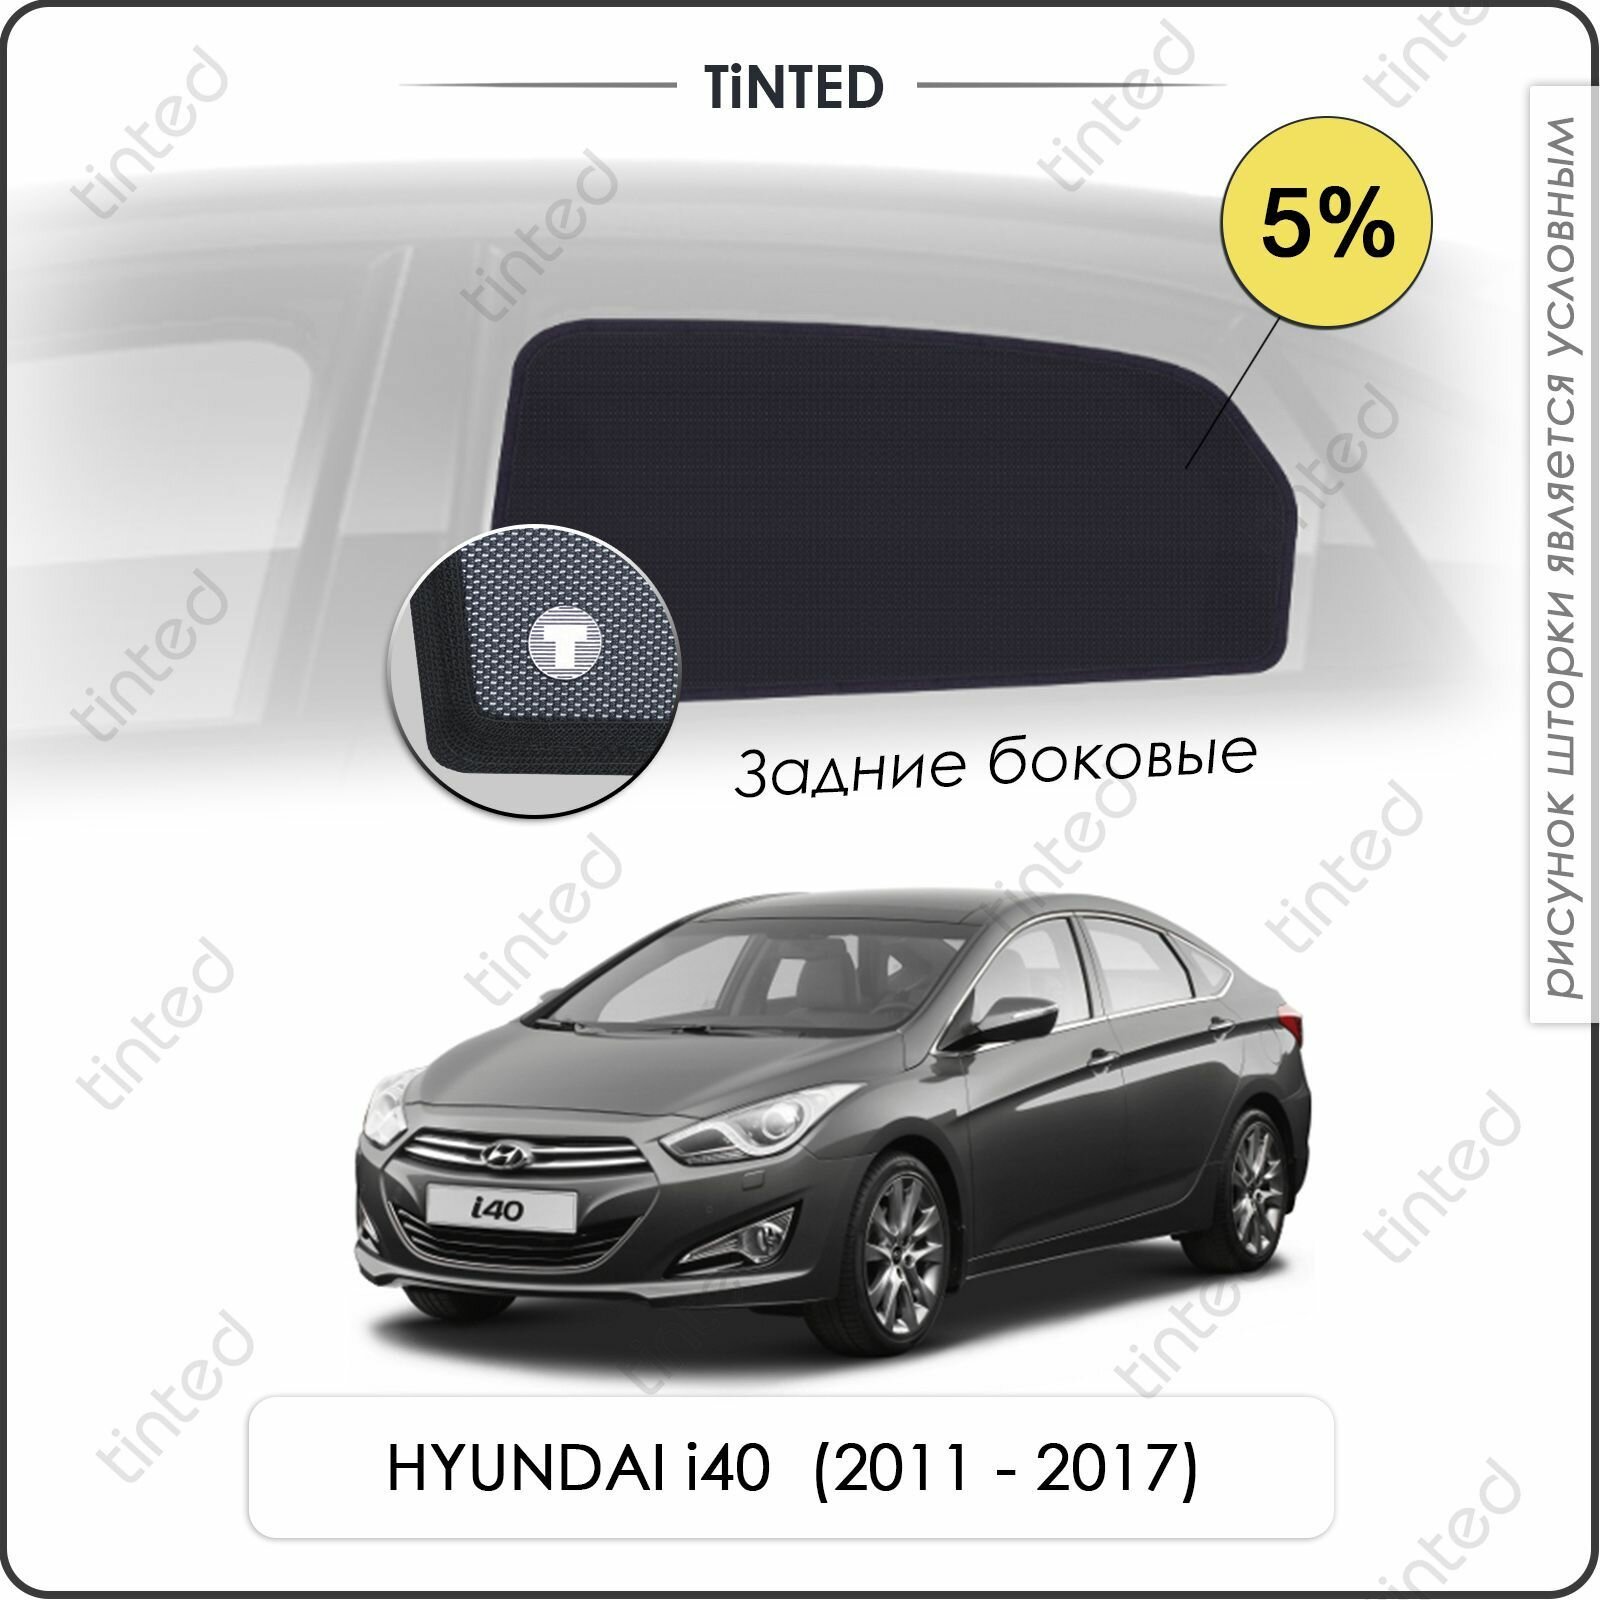 Шторки на автомобиль солнцезащитные HYUNDAI i40 1 Седан 4дв. (2011 - 2017) на задние двери 5%, сетки от солнца в машину хёндай АЙ40, Каркасные автошторки Premium